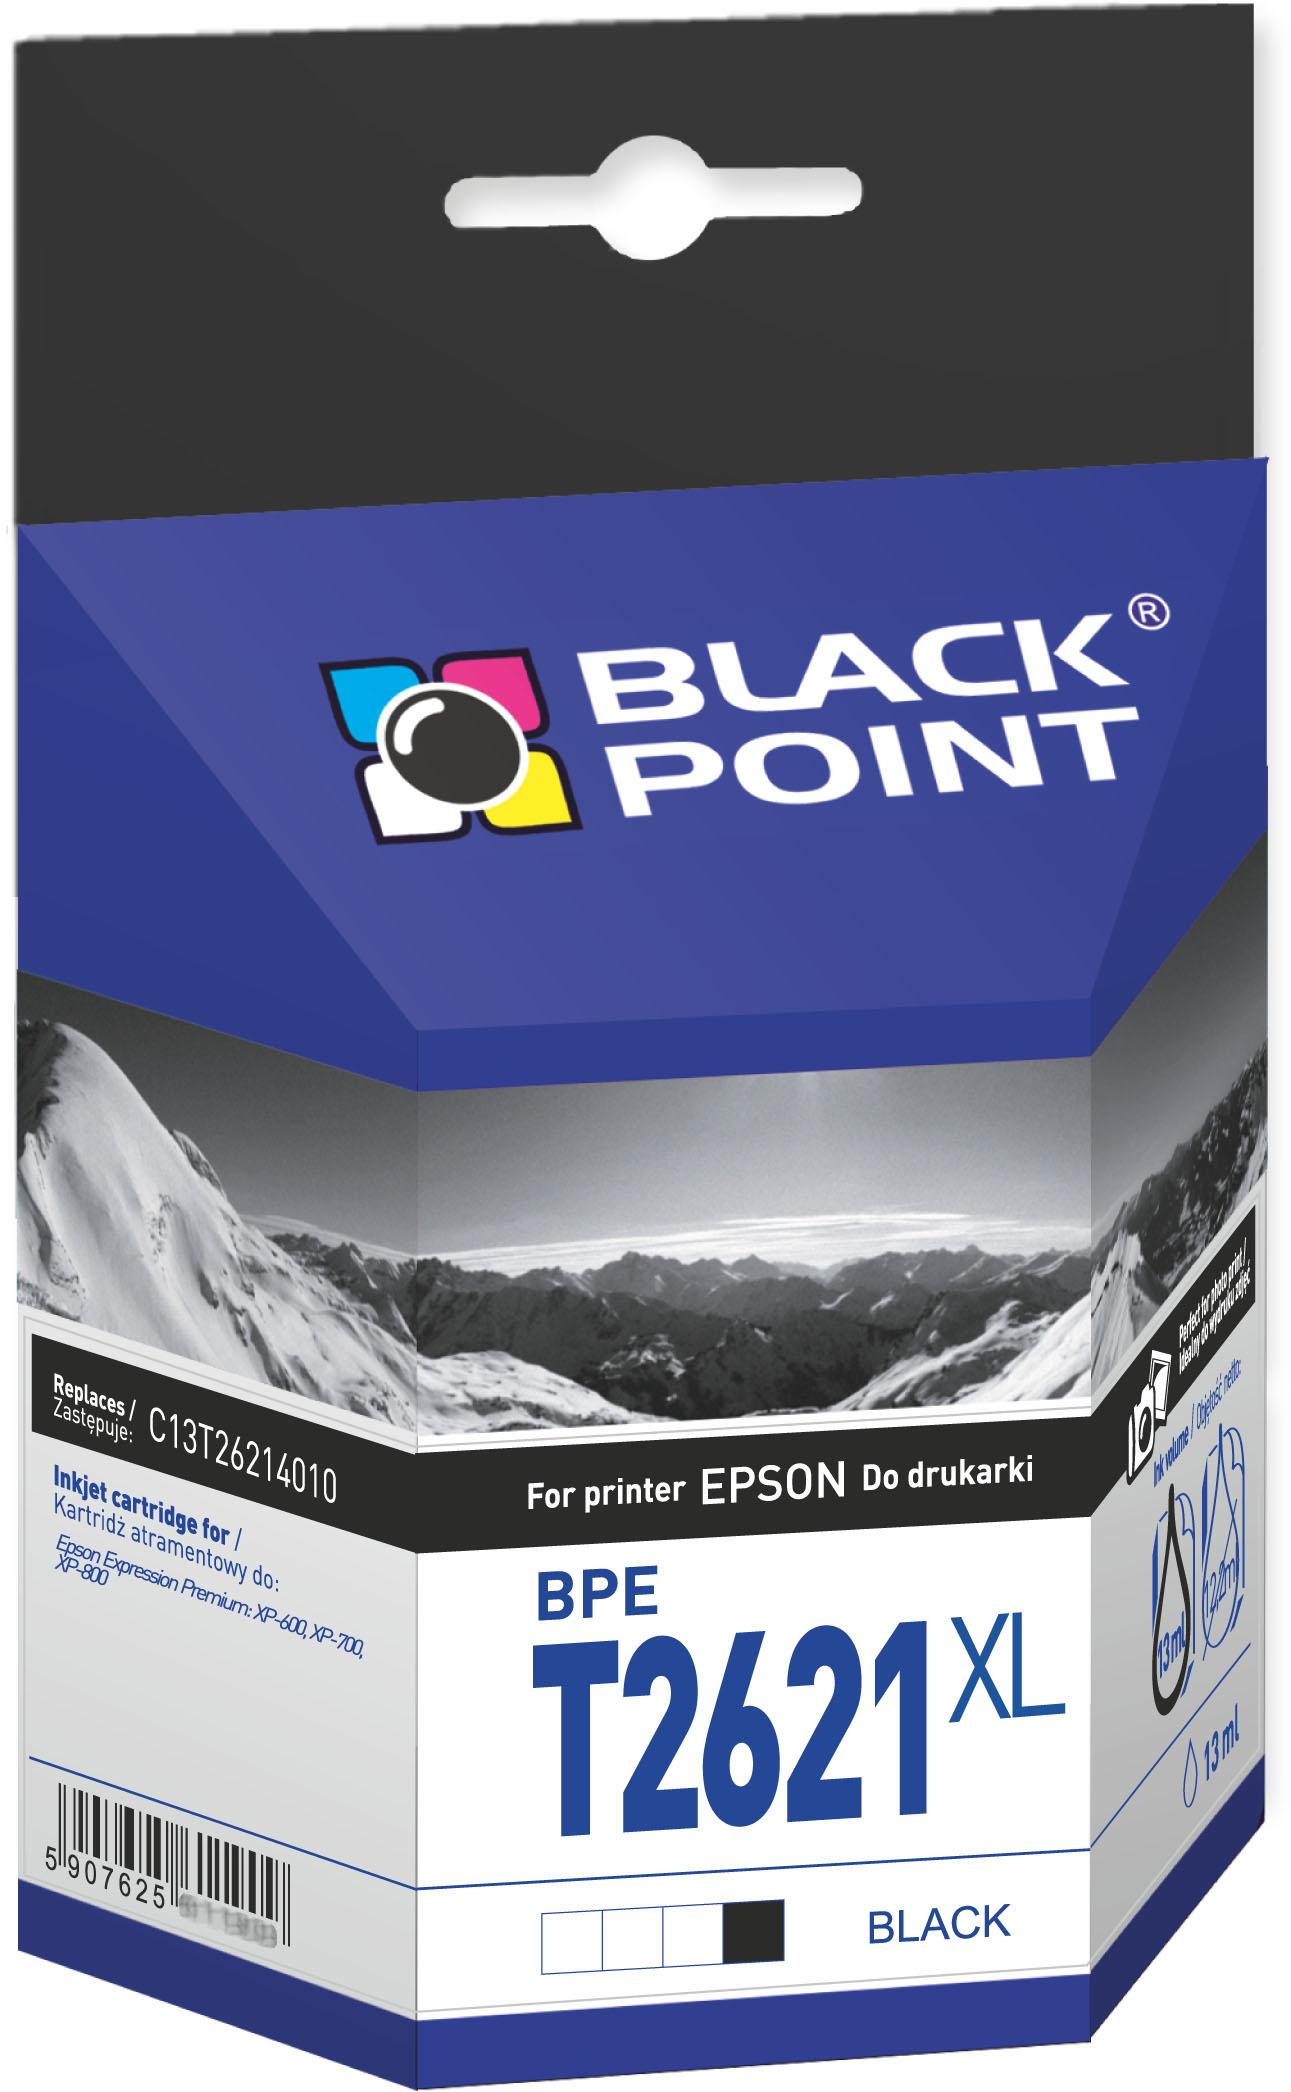 CMYK - Black Point tusz BPET2621XL zastpuje Epson C13T26214010, czarny